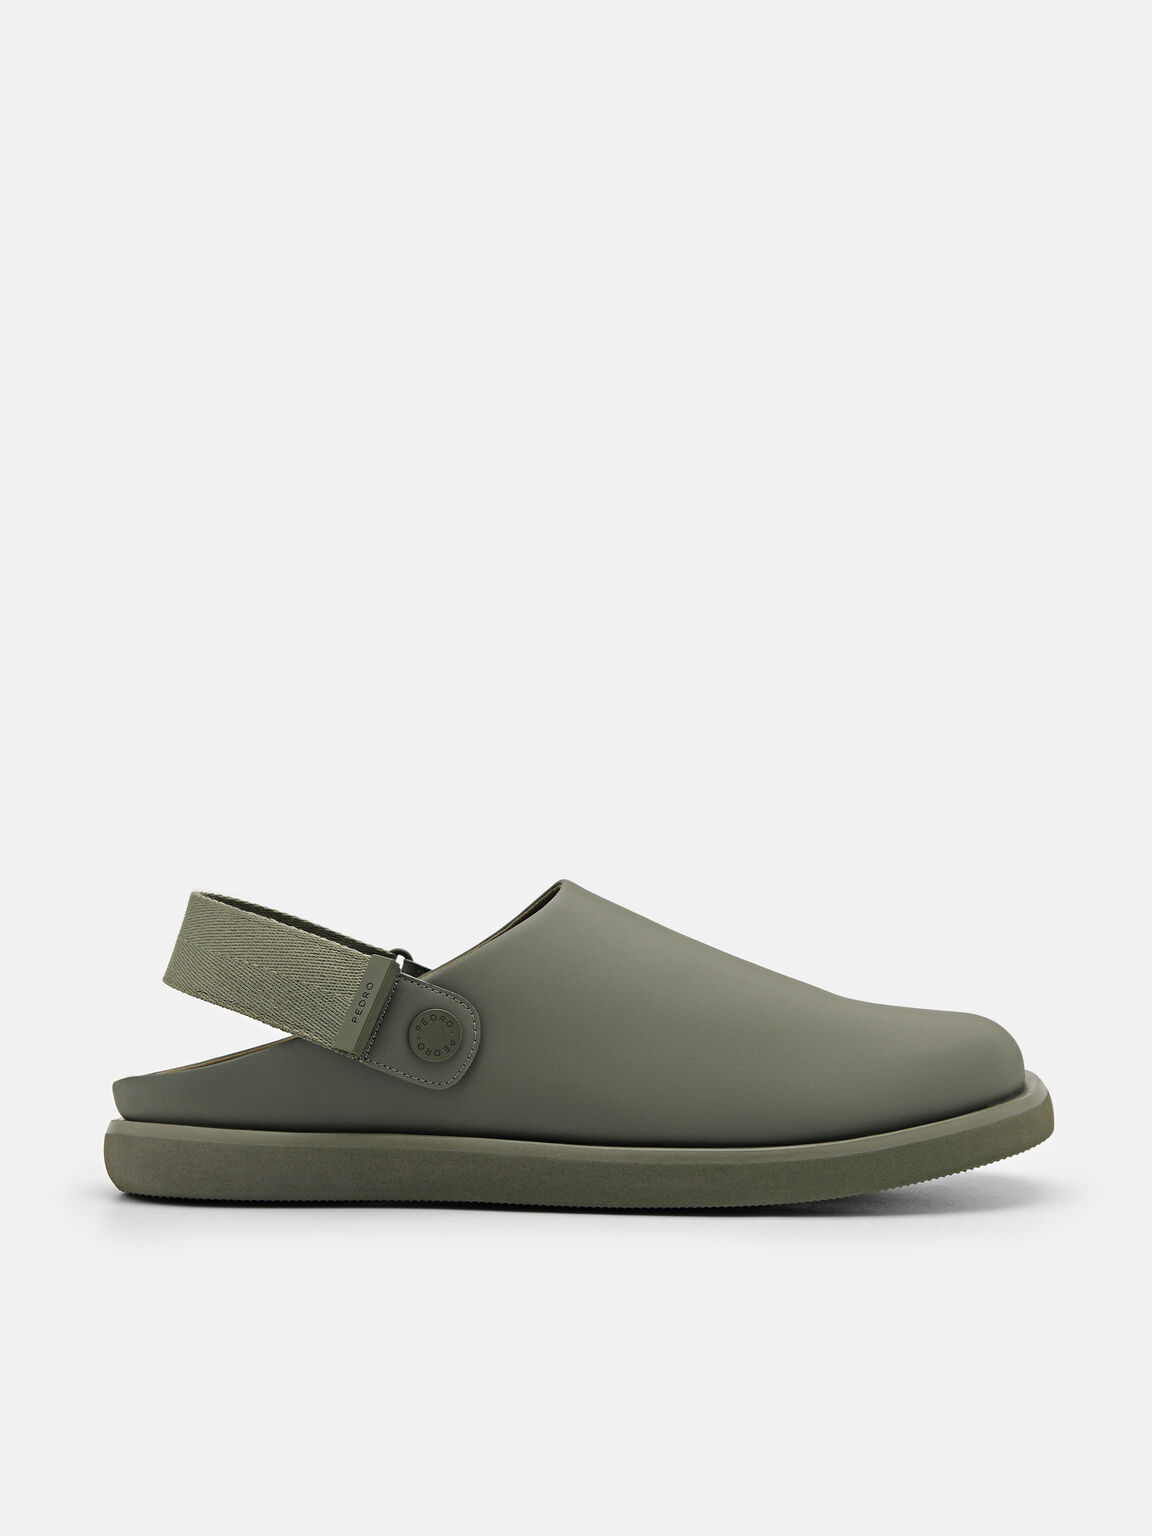 Kenzie Backstrap Sandals, Olive